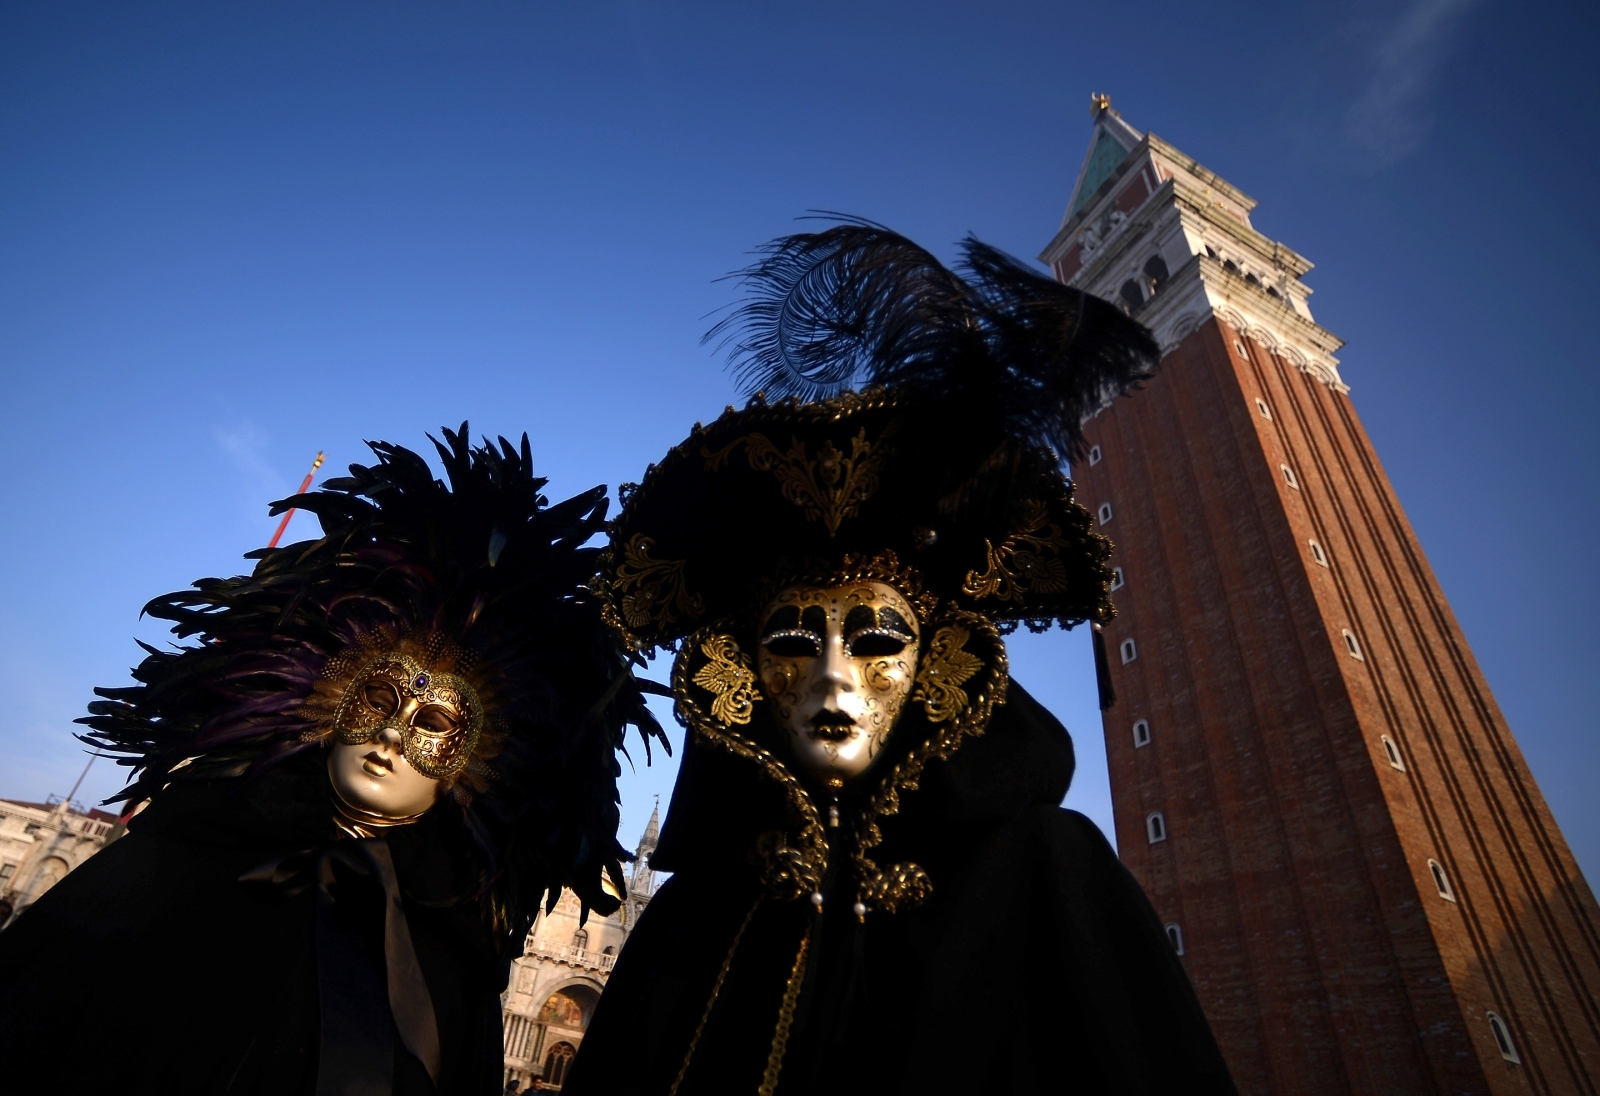 Venice carnival 2018